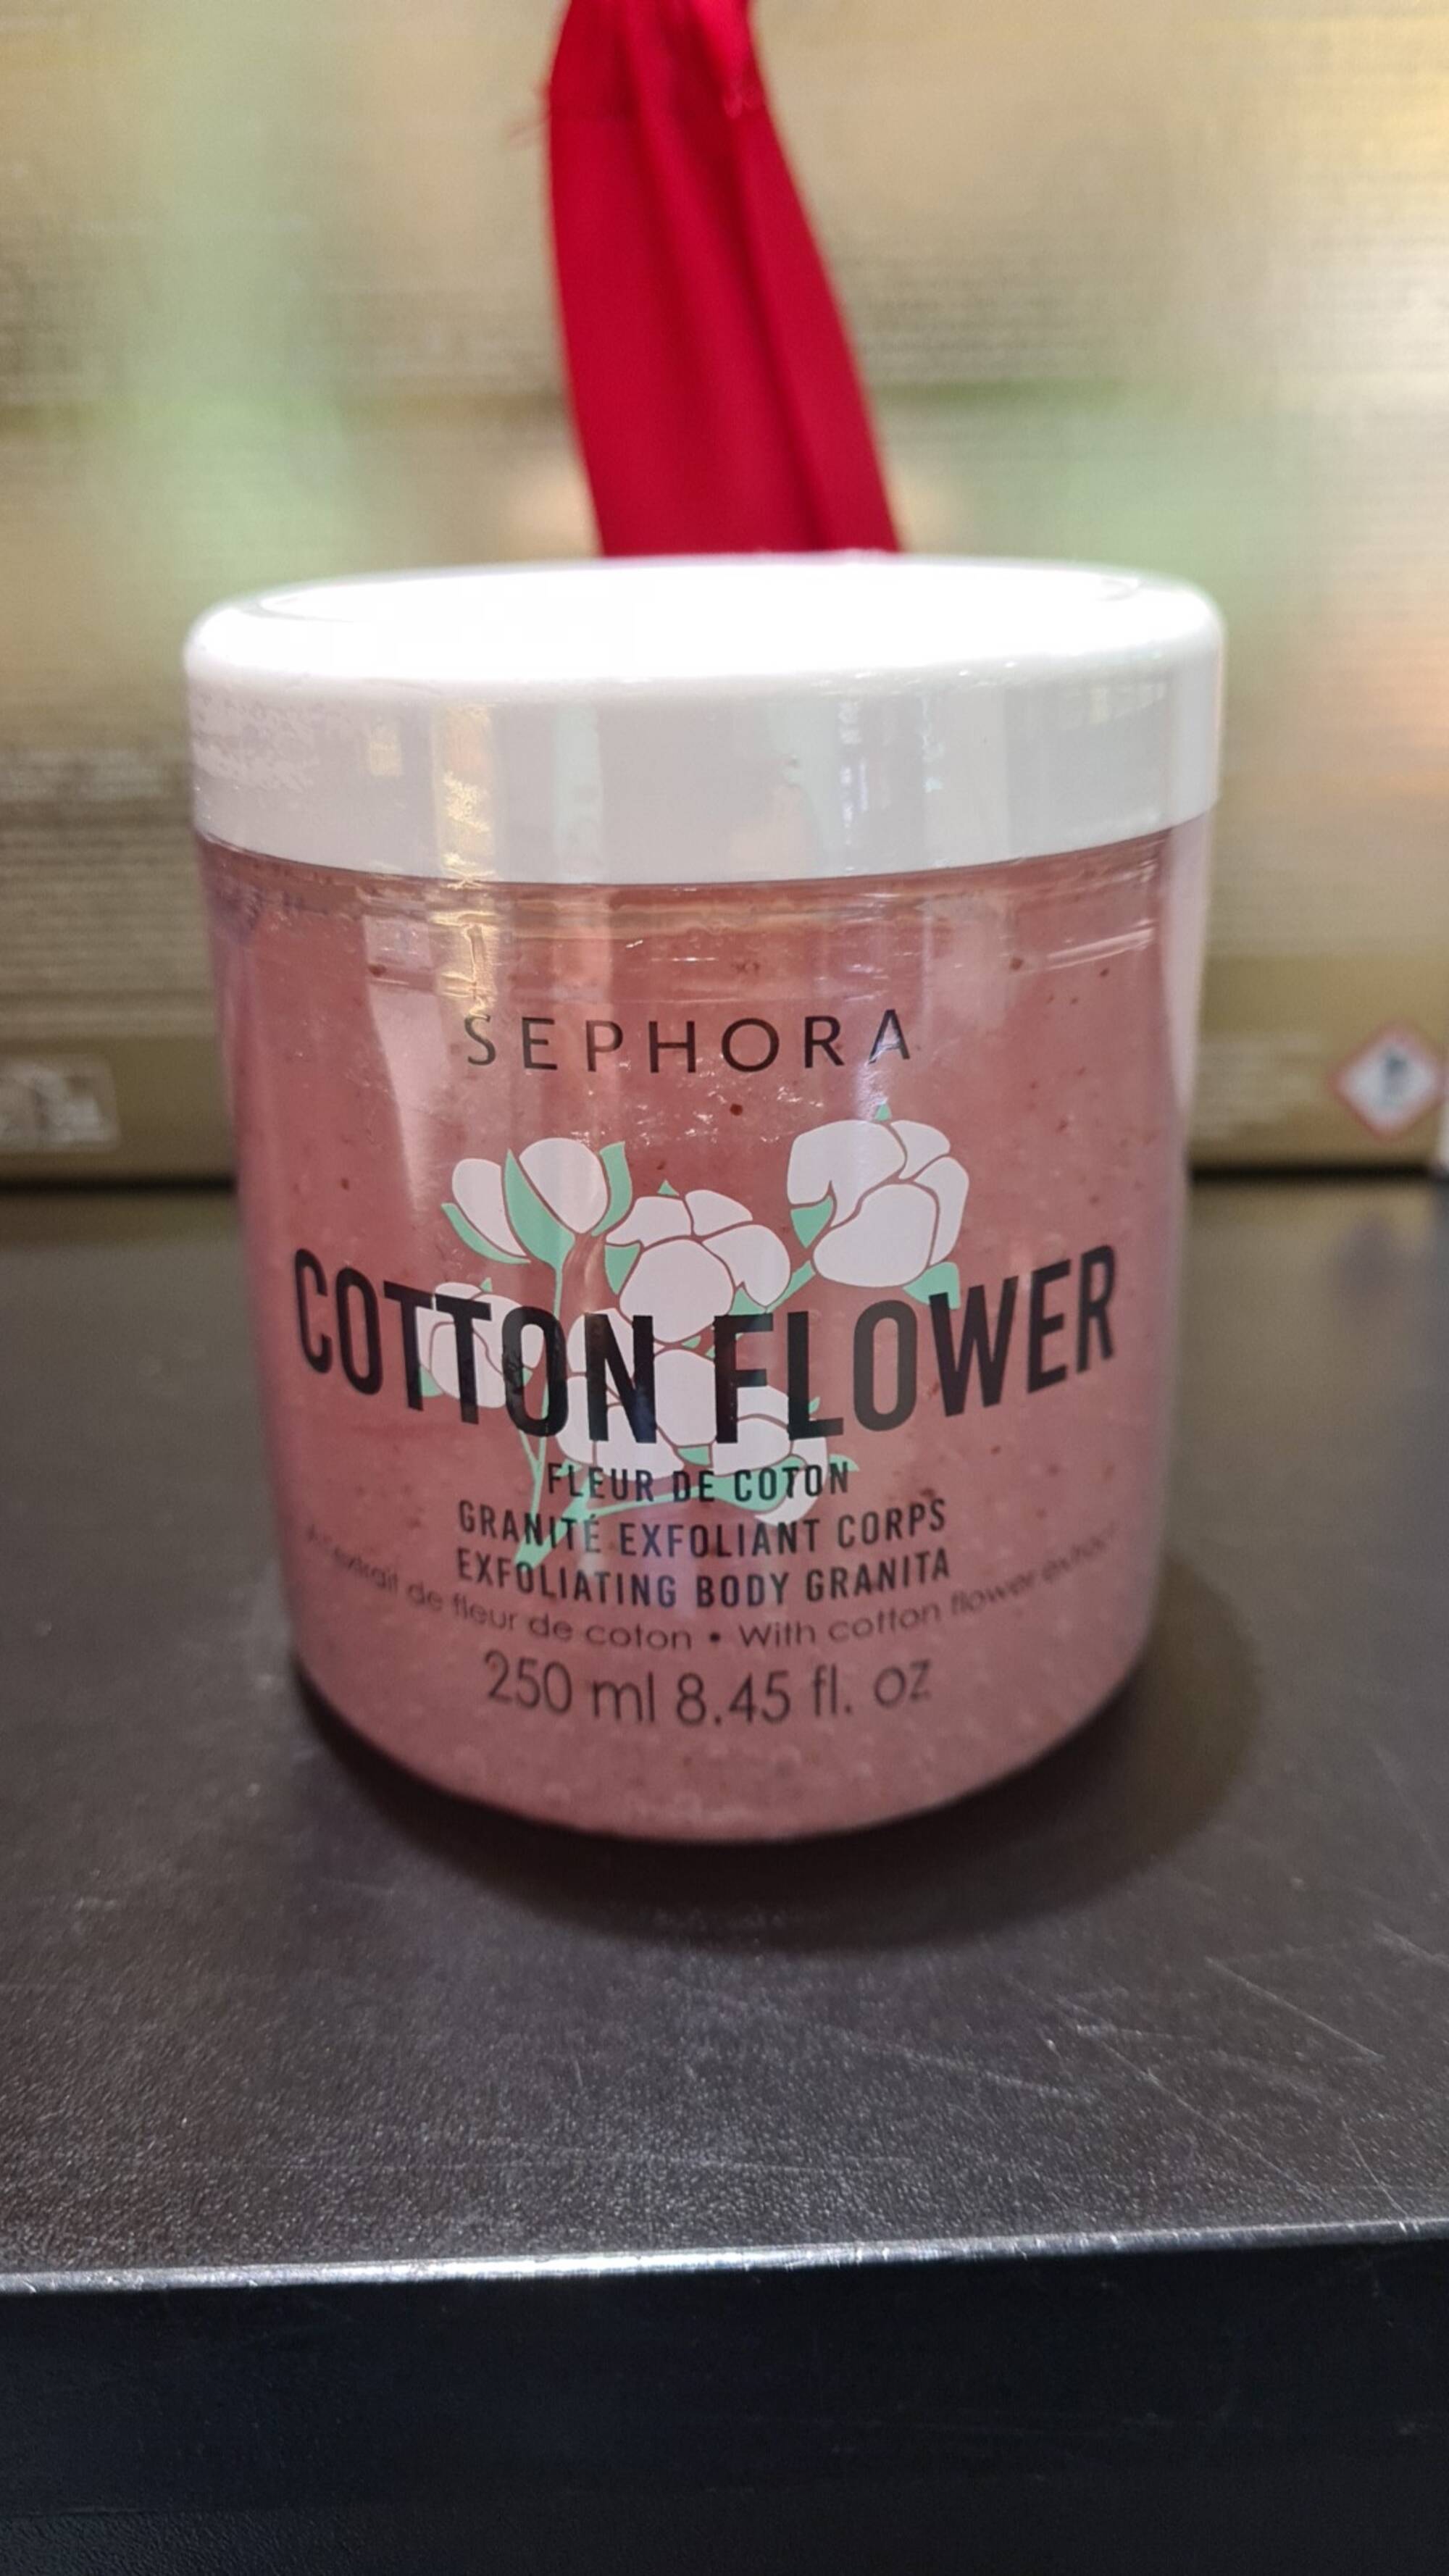 SEPHORA - Cotton flower - Granité exfoliant corps